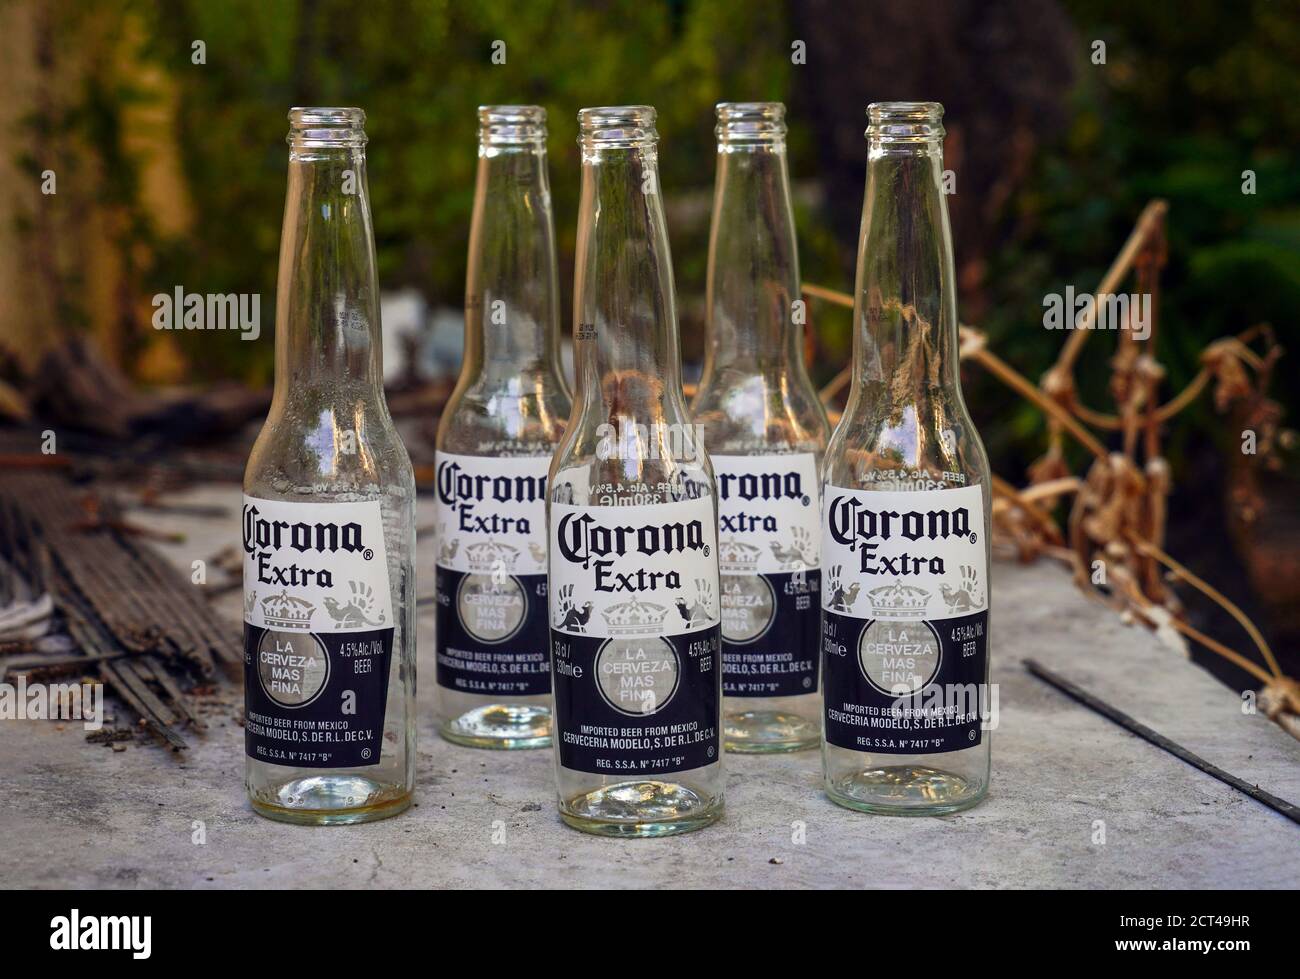 Botellas de cerveza Corona vacías Fotografía de stock - Alamy